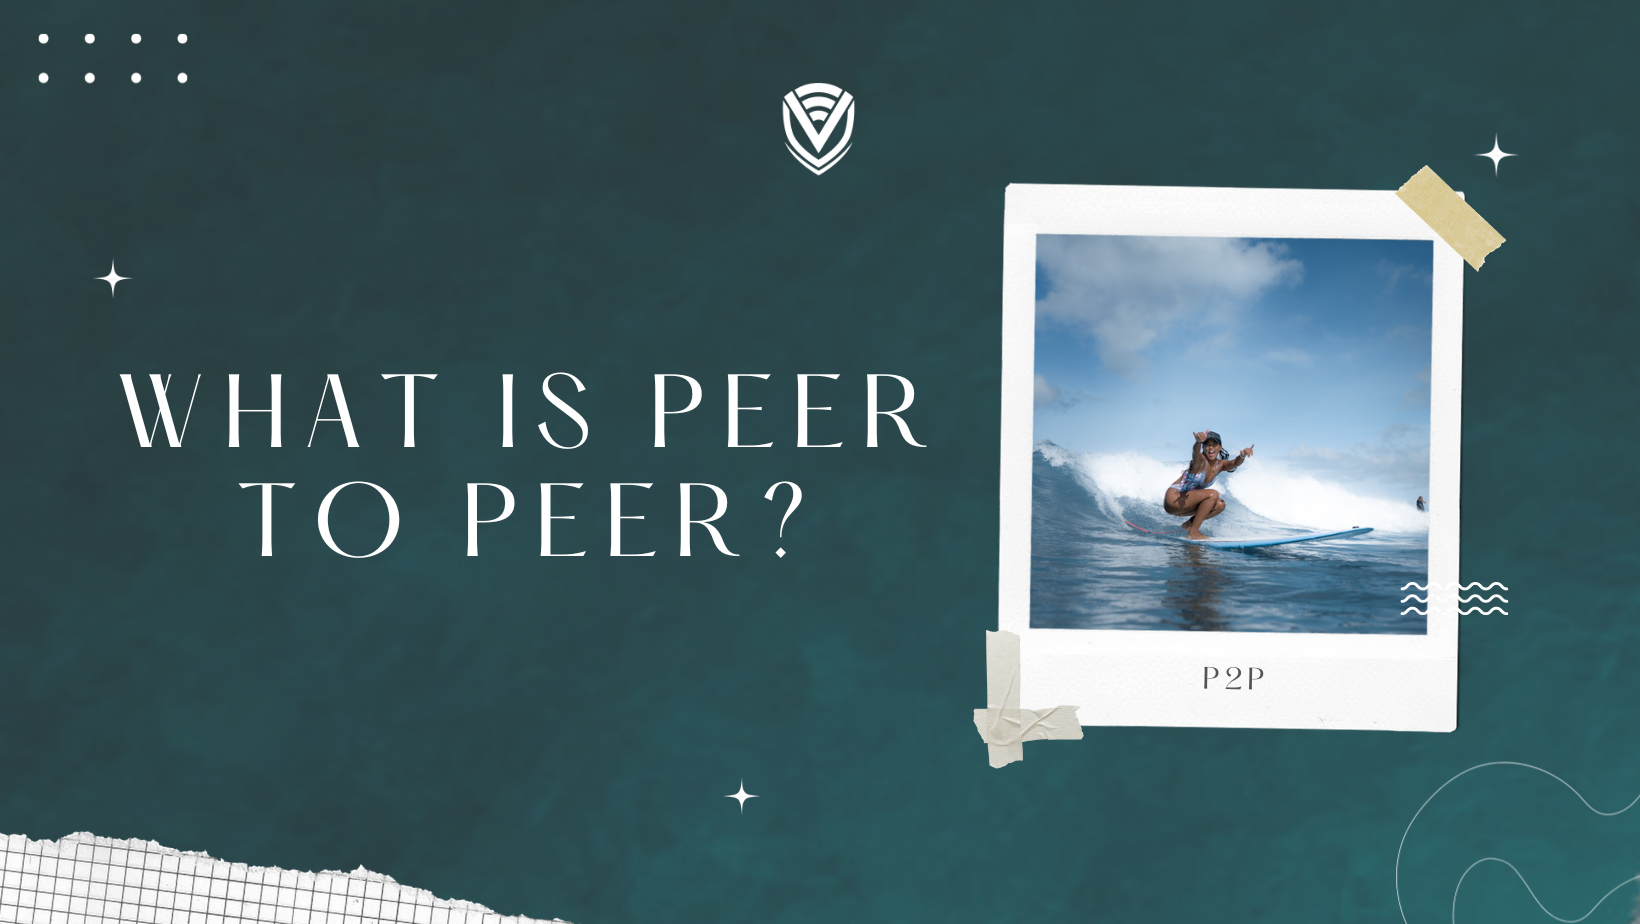 What is Peer to Peer?